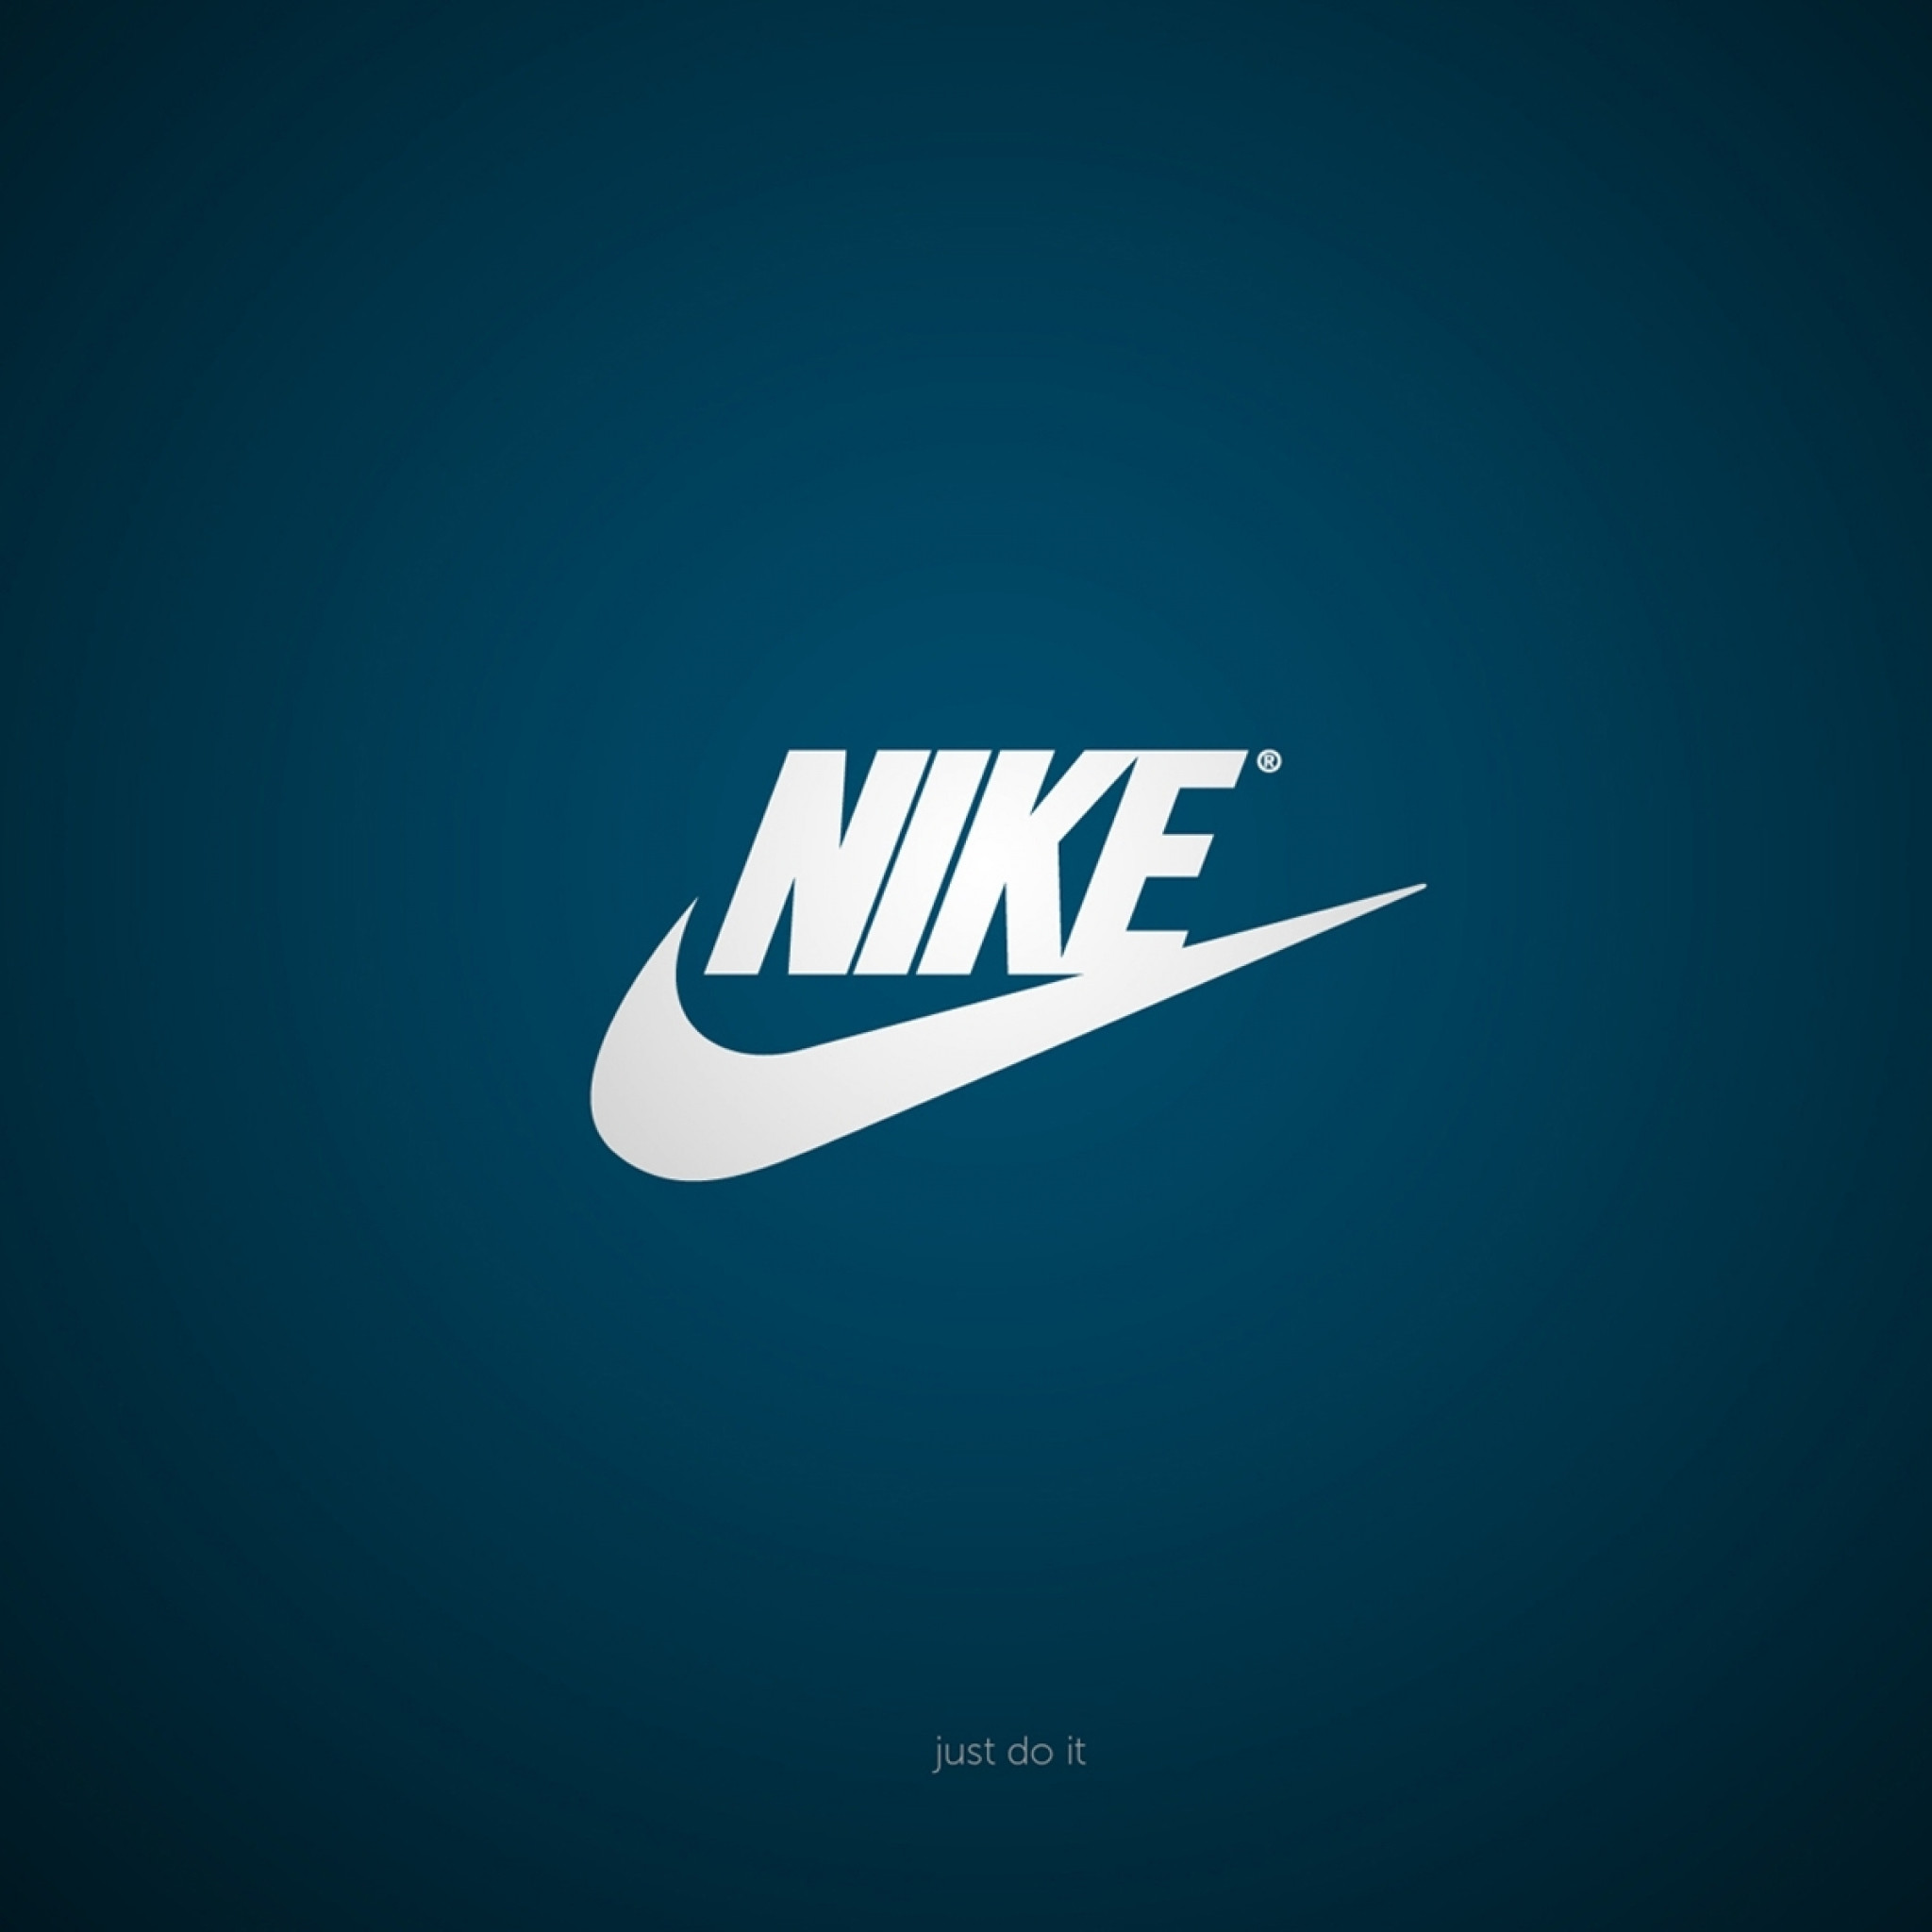 Nike Air logo